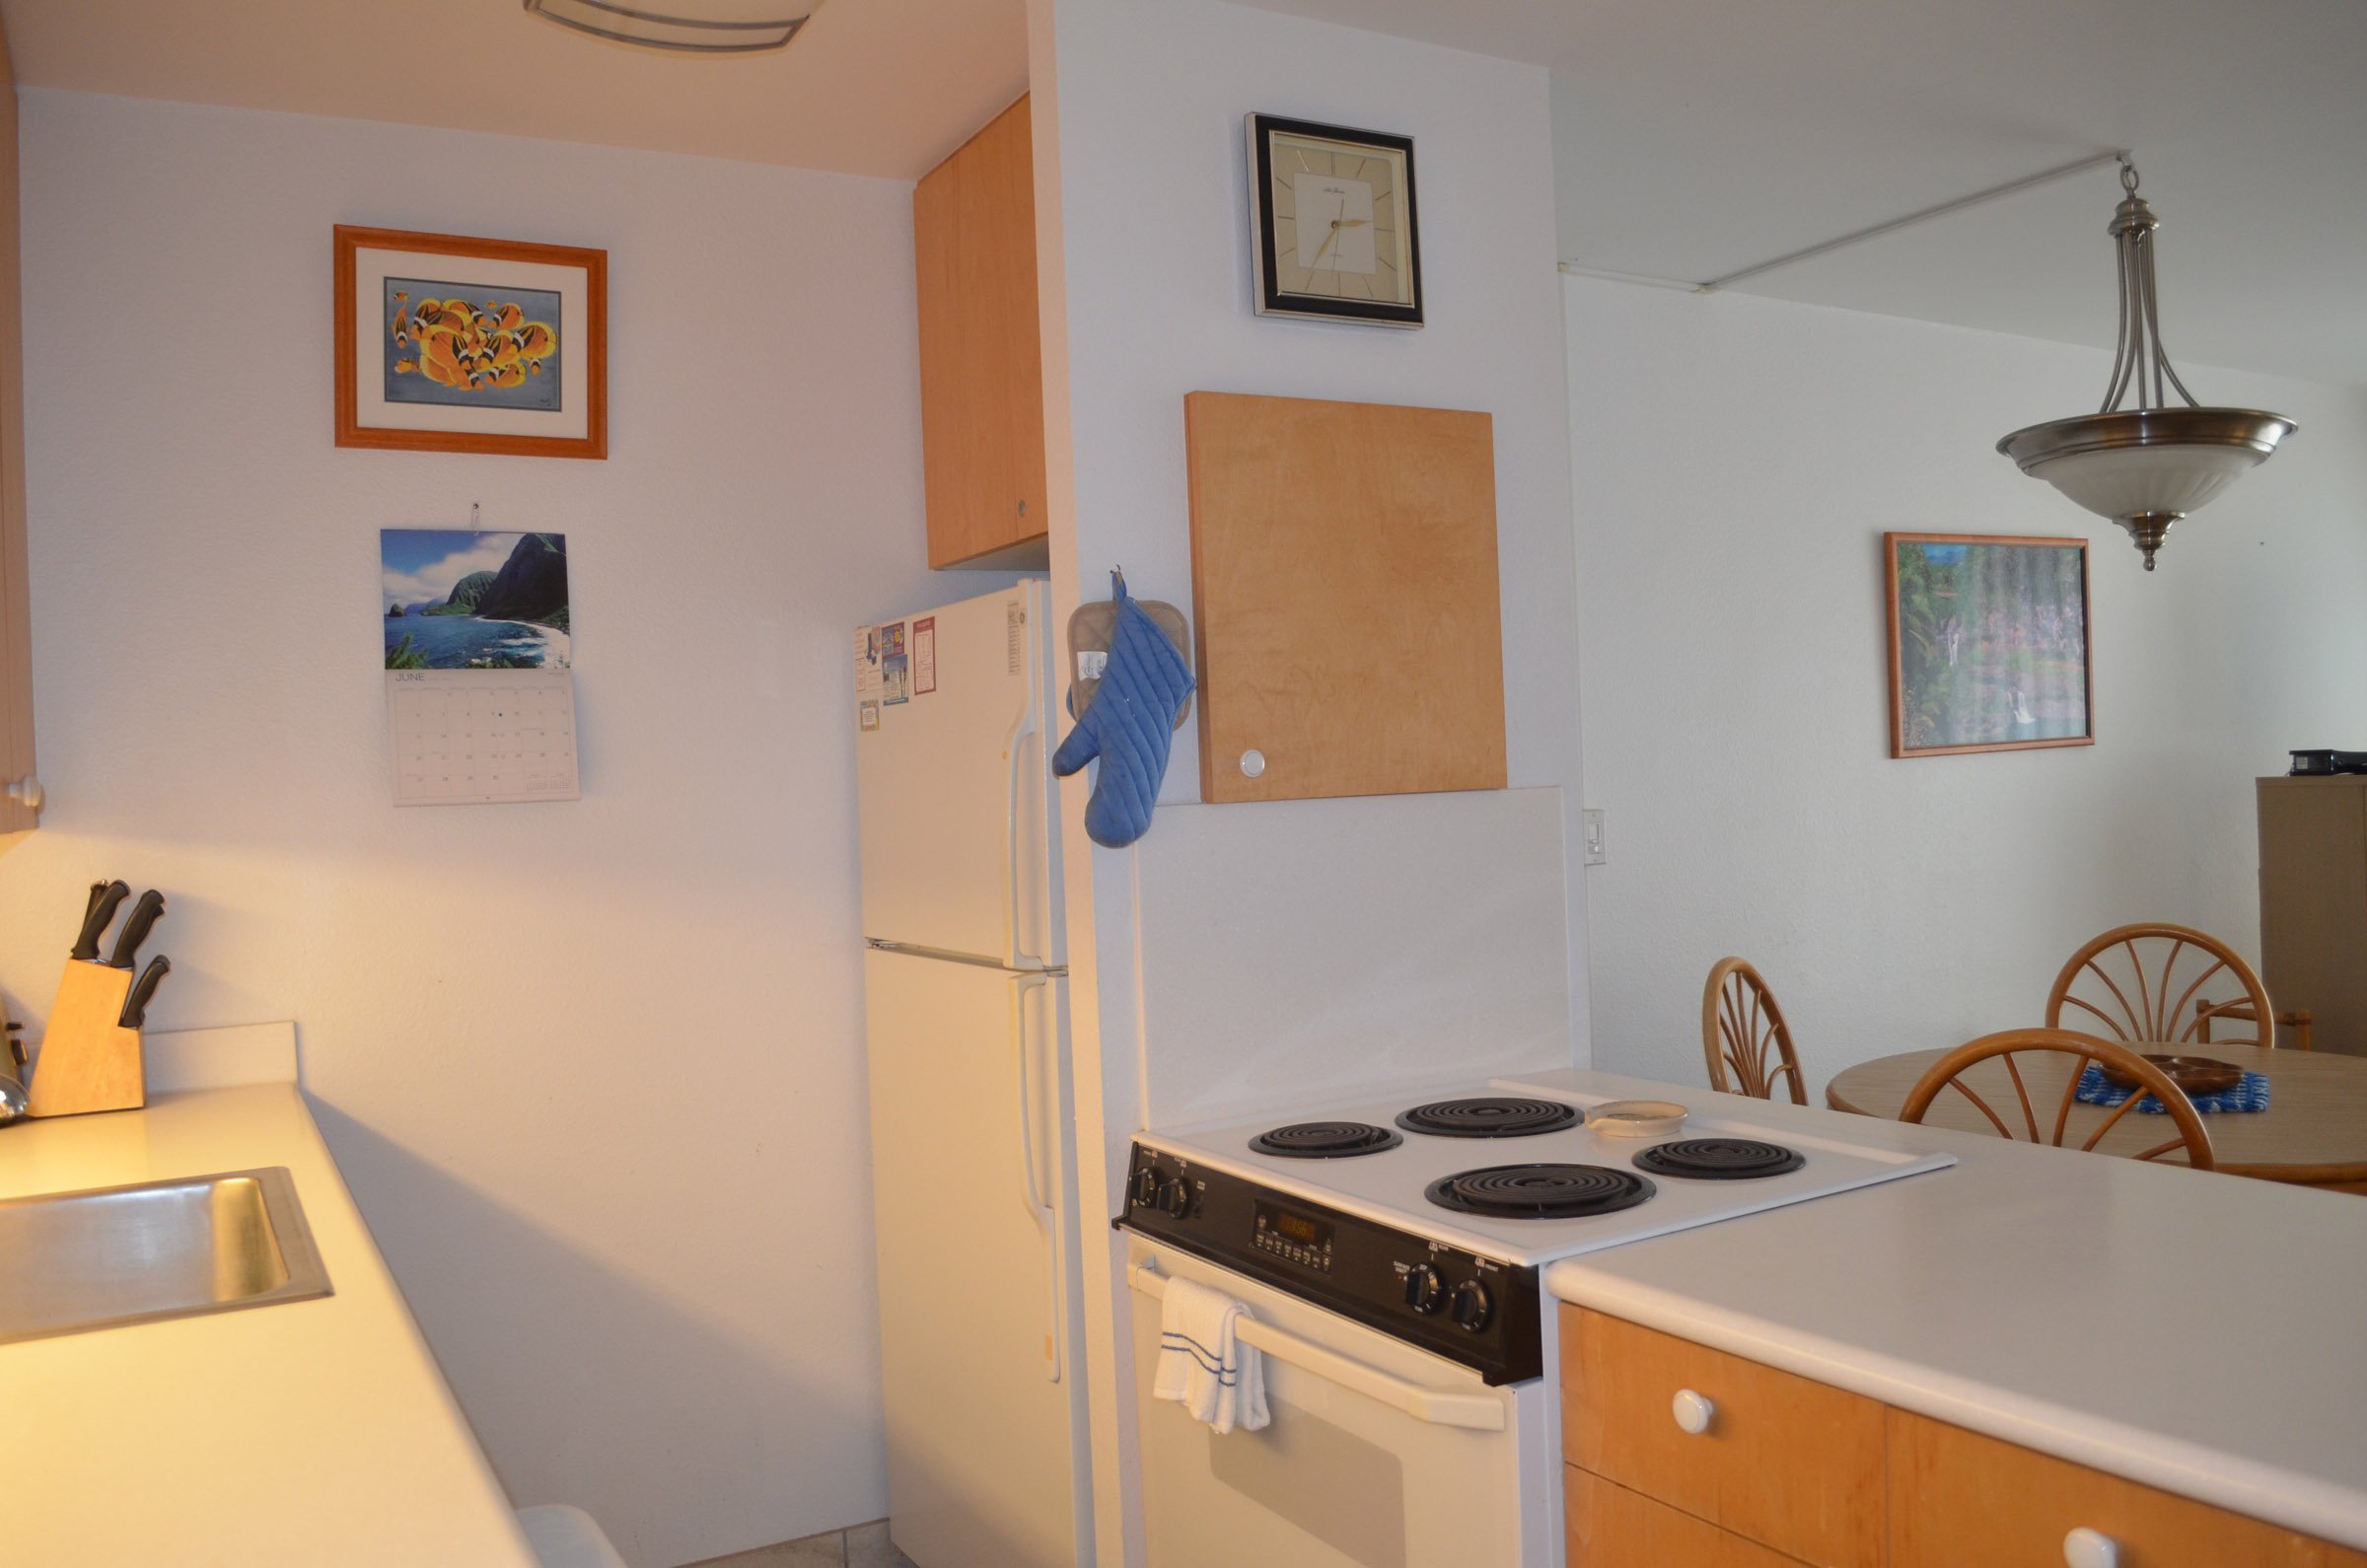 MV 3212 Kitchen range, refrigerator (041) Peg.jpg